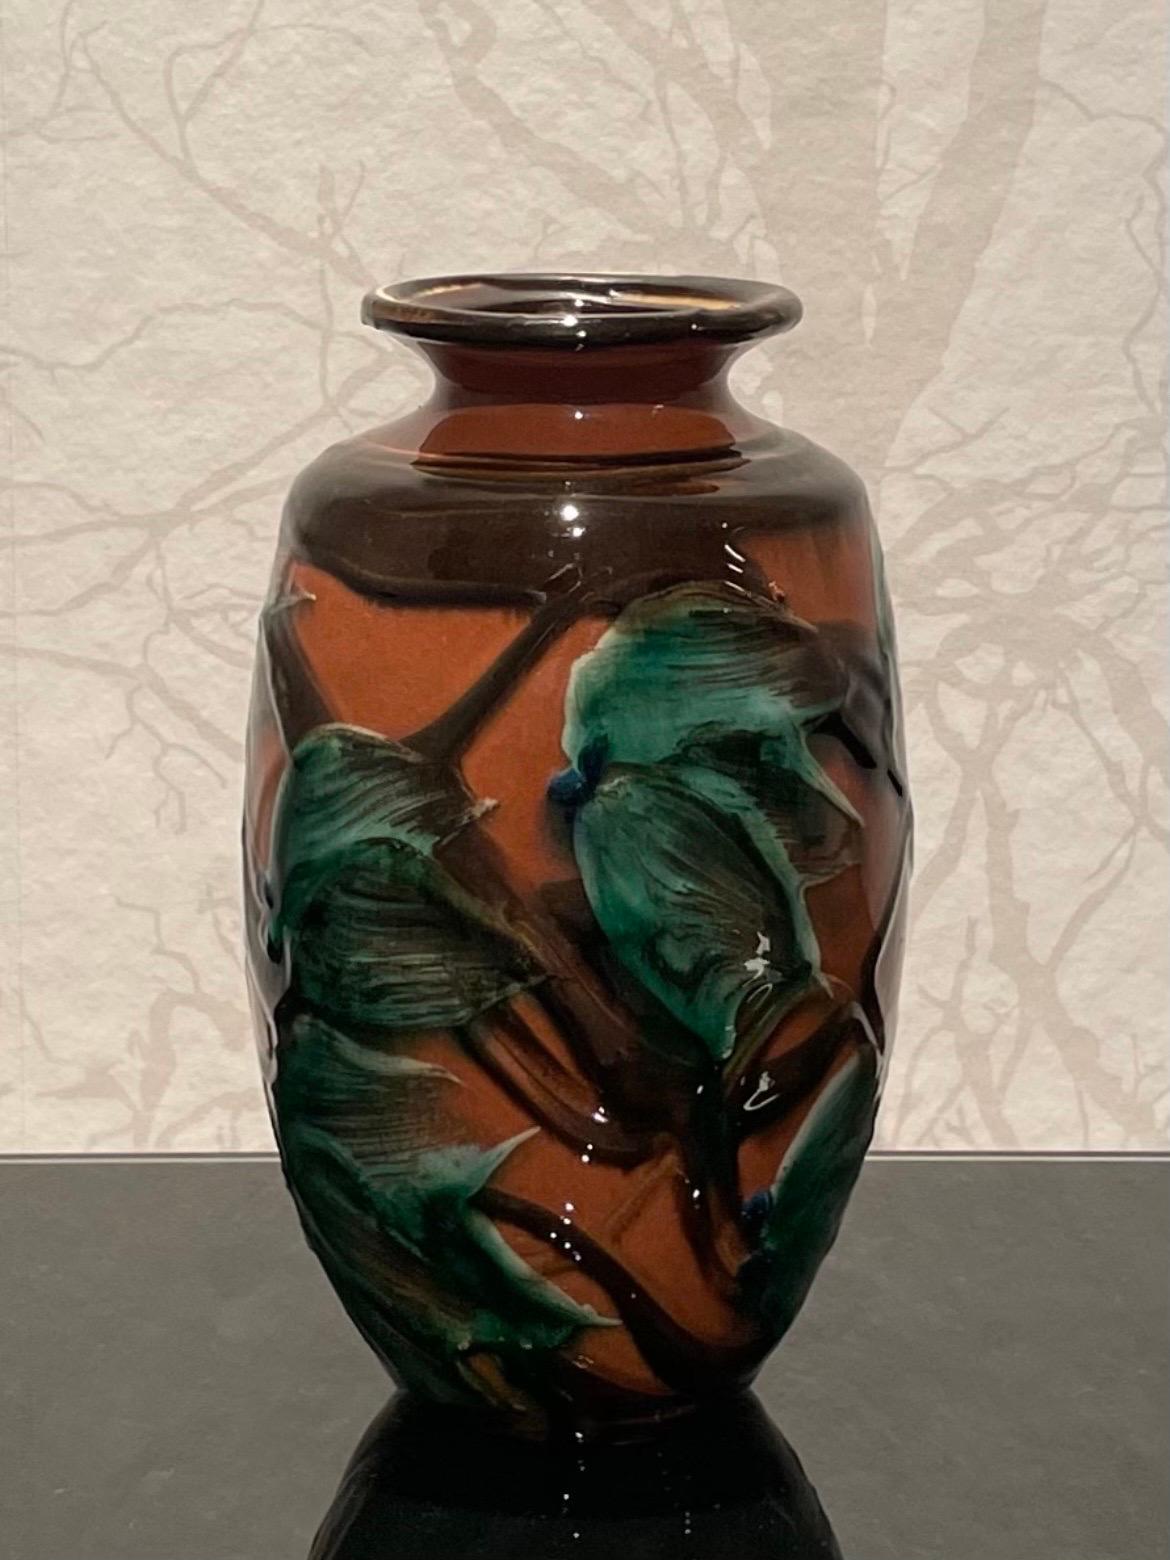 Dies ist die 20 cm hohe dänische Keramikvase aus den 1920er Jahren von Herman Kähler in neuwertigem Zustand. 

Sie ist mit einem balusterförmigen Körper ausgestattet. Es hat eine glänzende Oberfläche, ein schönes glasiertes Kuhhornmuster mit schwarz